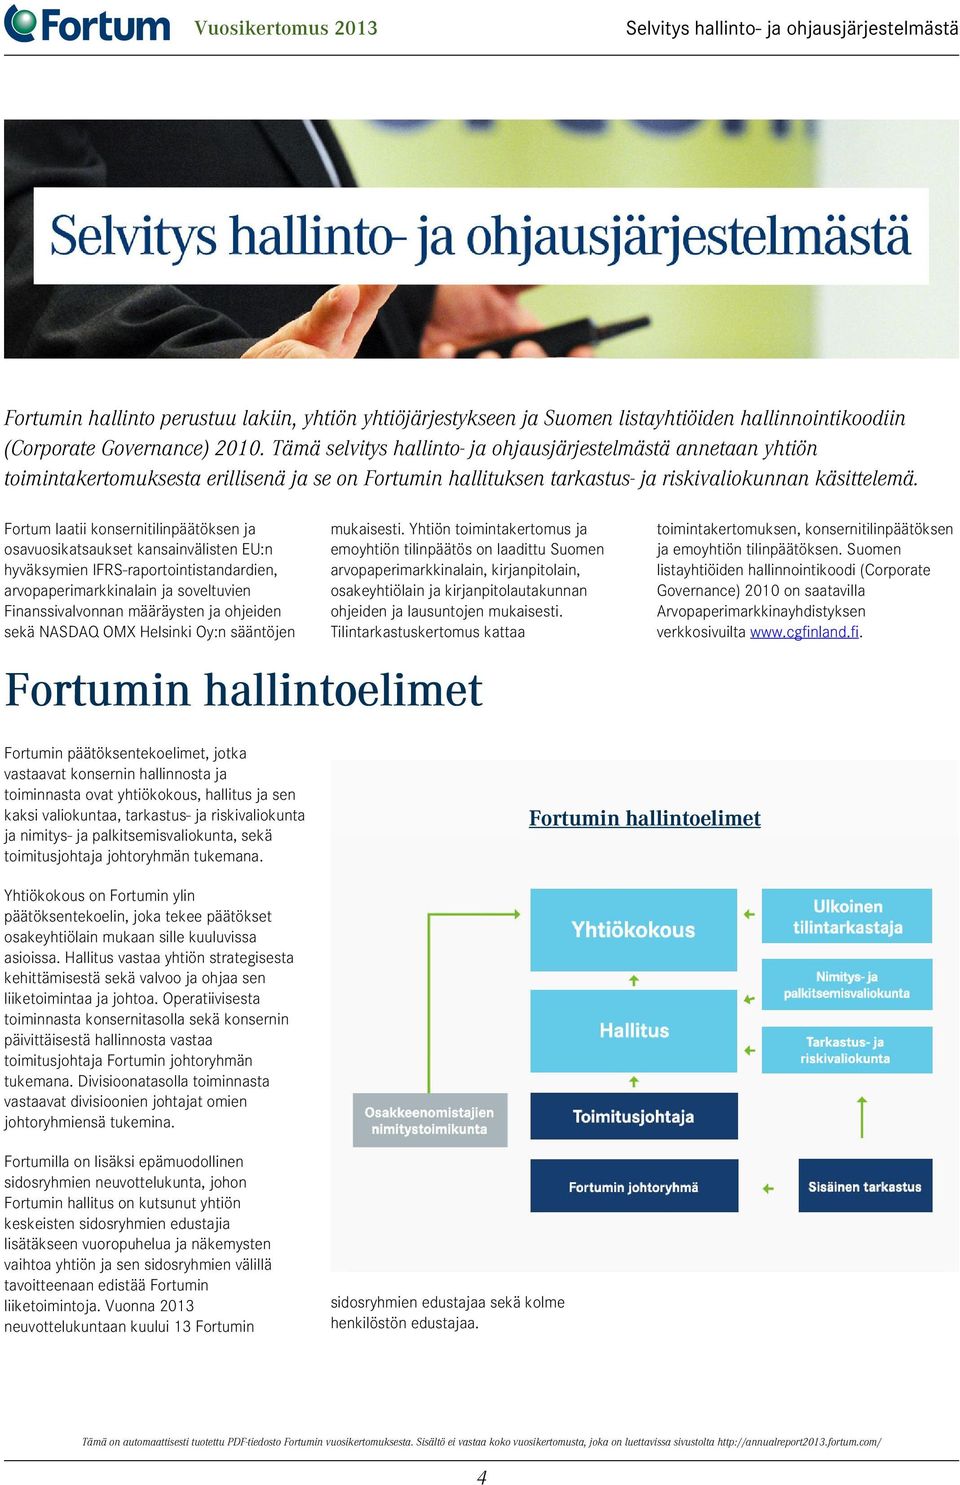 Fortum laatii konsernitilinpäätöksen ja osavuosikatsaukset kansainvälisten EU:n hyväksymien IFRS-raportointistandardien, arvopaperimarkkinalain ja soveltuvien Finanssivalvonnan määräysten ja ohjeiden